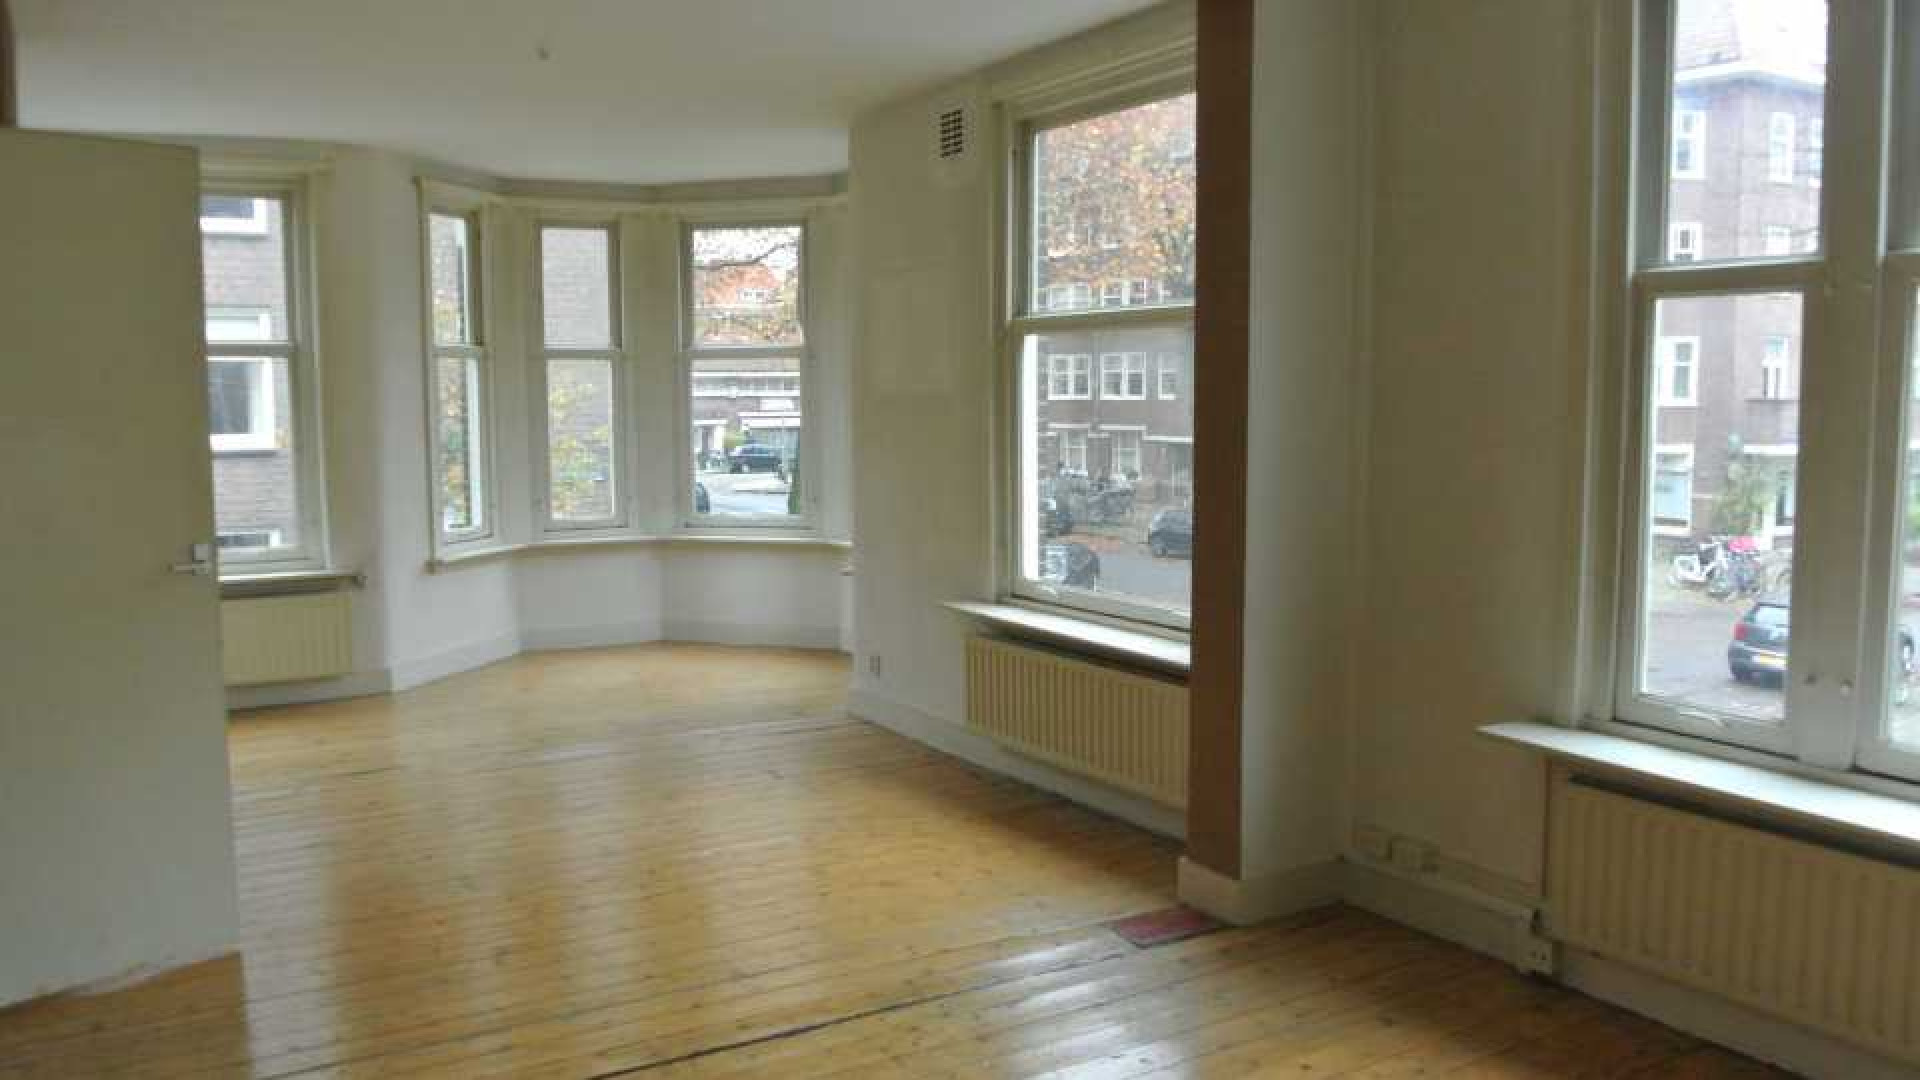 Reinout Oerlemans zet zijn appartement in Amsterdam Zuid te huur. Zie foto's